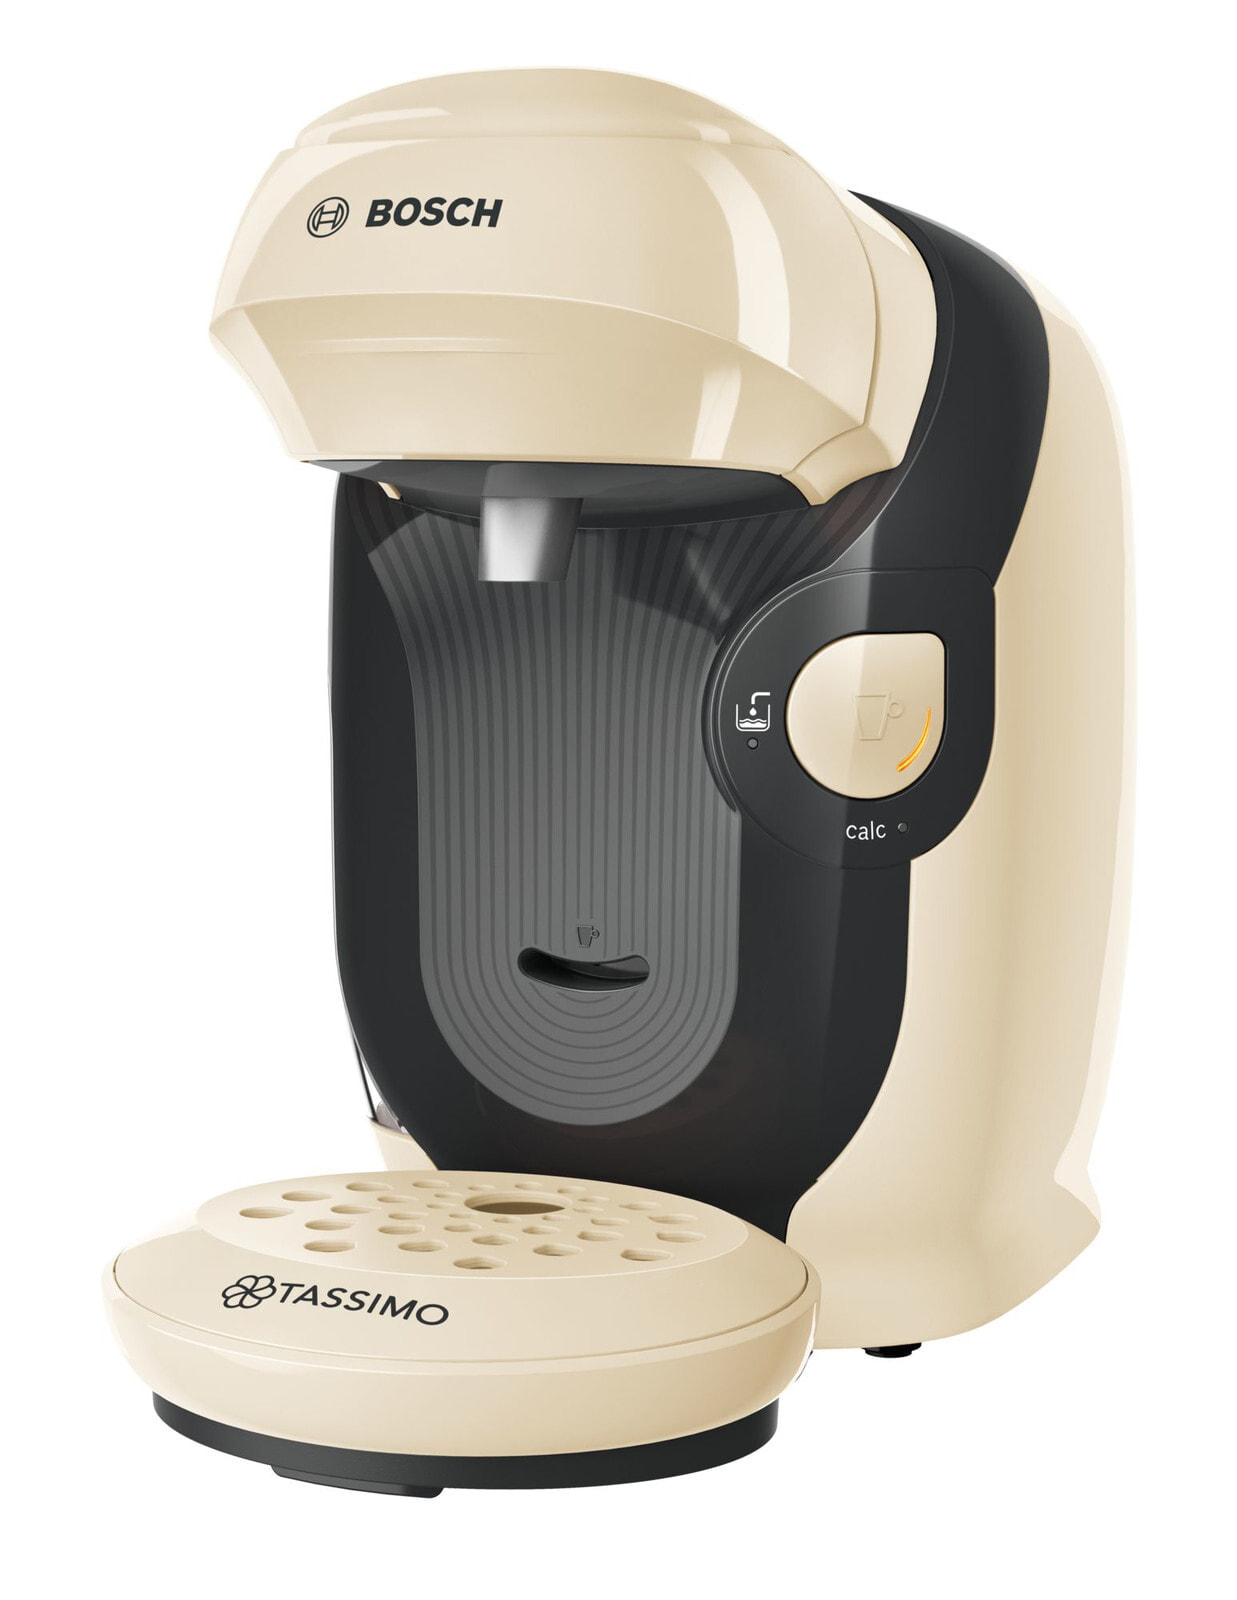 Bosch Tassimo Style TAS1107 кофеварка Капсульная кофеварка 0,7 L Автоматическая